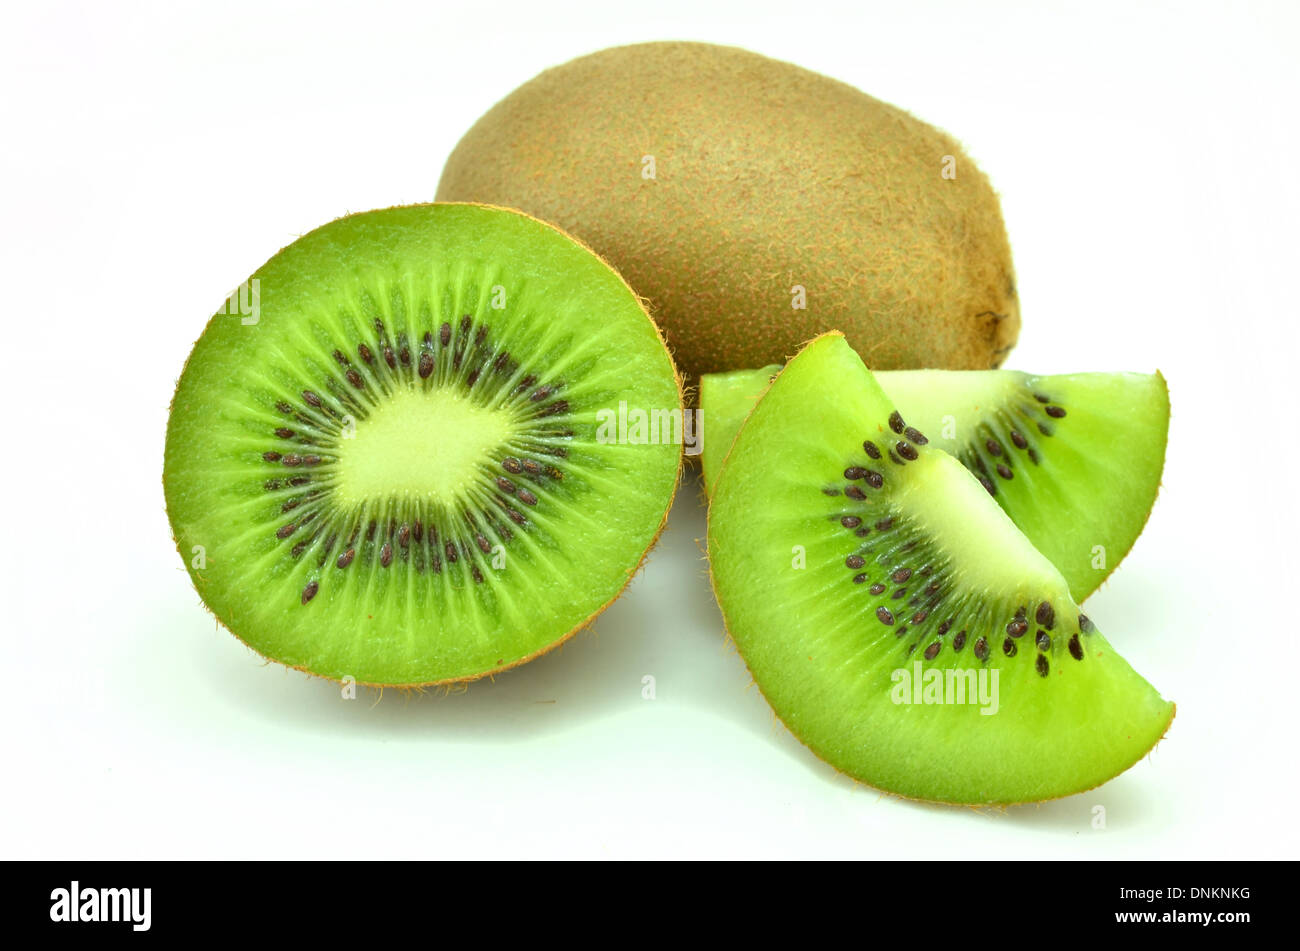 Whole kiwi fruit and his sliced segments isolated on white background Stock Photo